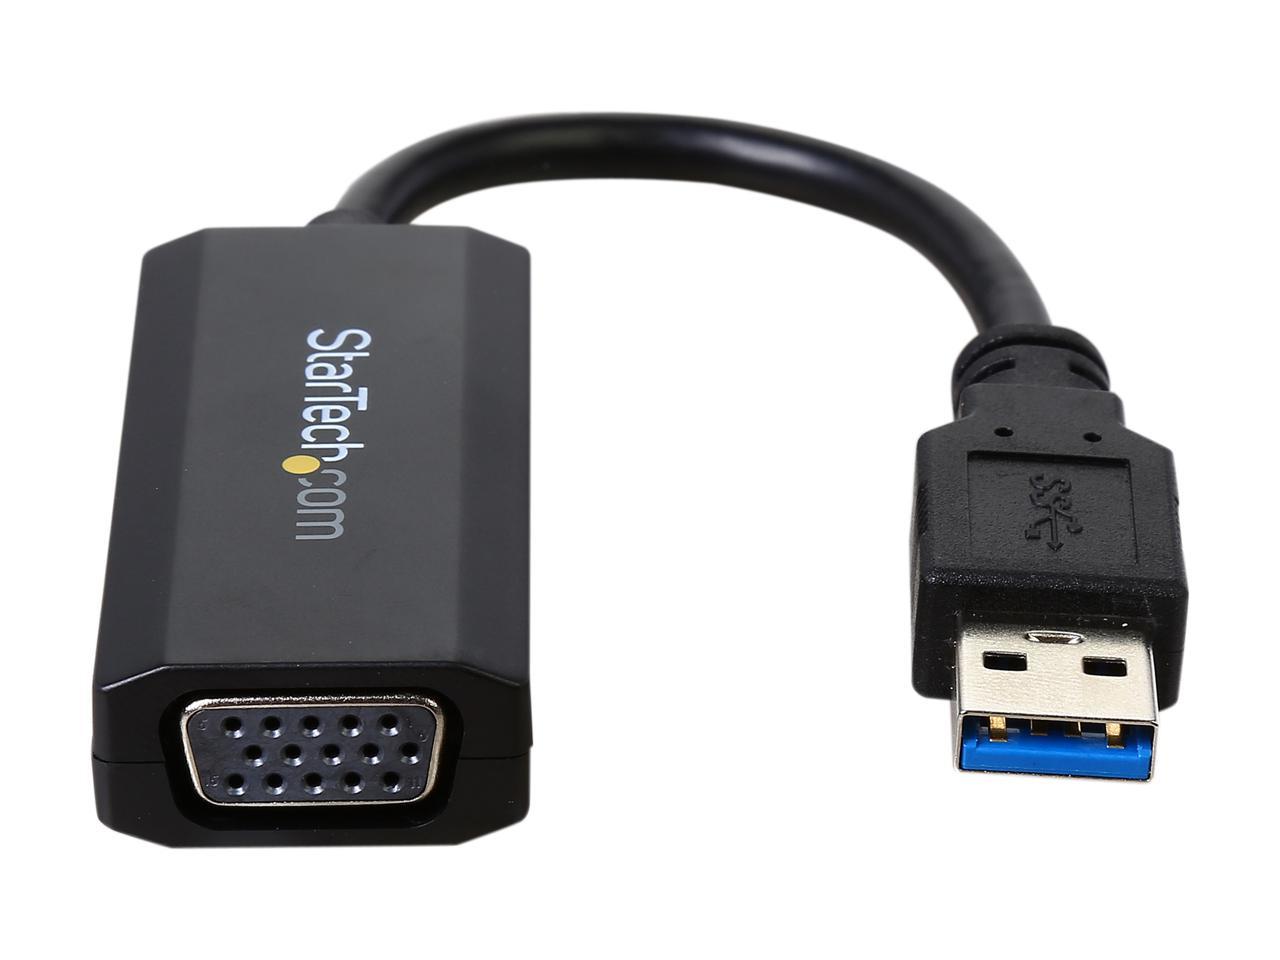 Vga drivers что это. ВГА переходник на юсб 2.0. VGA переходник USB асус. Driver VGA USB 3.0. VGA USB переходник драйвер.